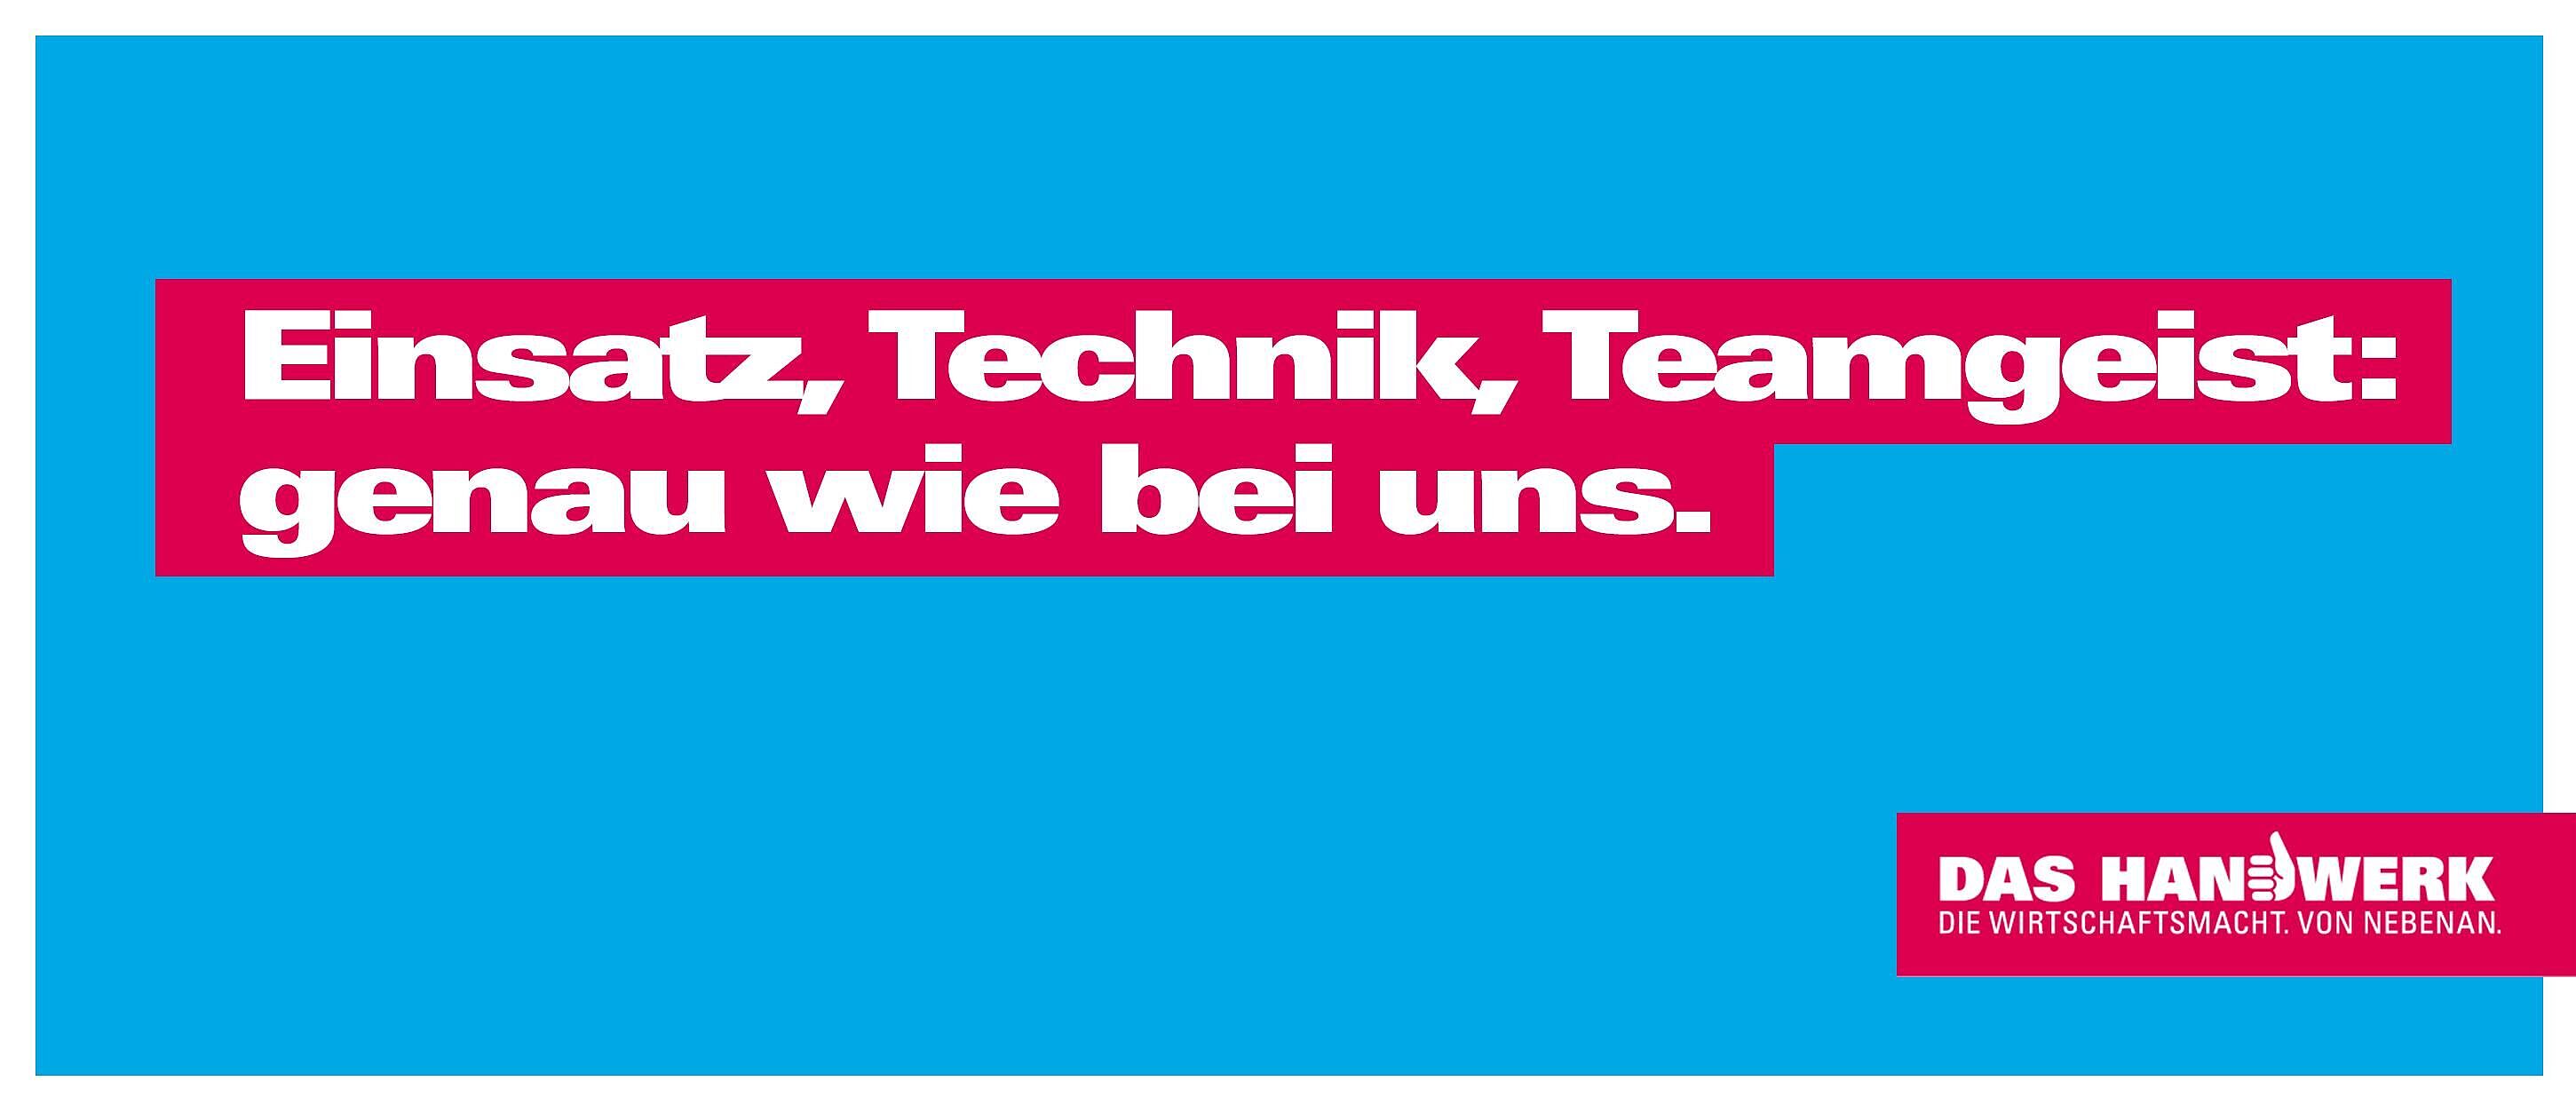 Hellblauer Hintergrund darauf ein weißer Schriftzug mit rotem Hintergrund: Einsatz, Technik, Teamgeist: genau wie bei uns.